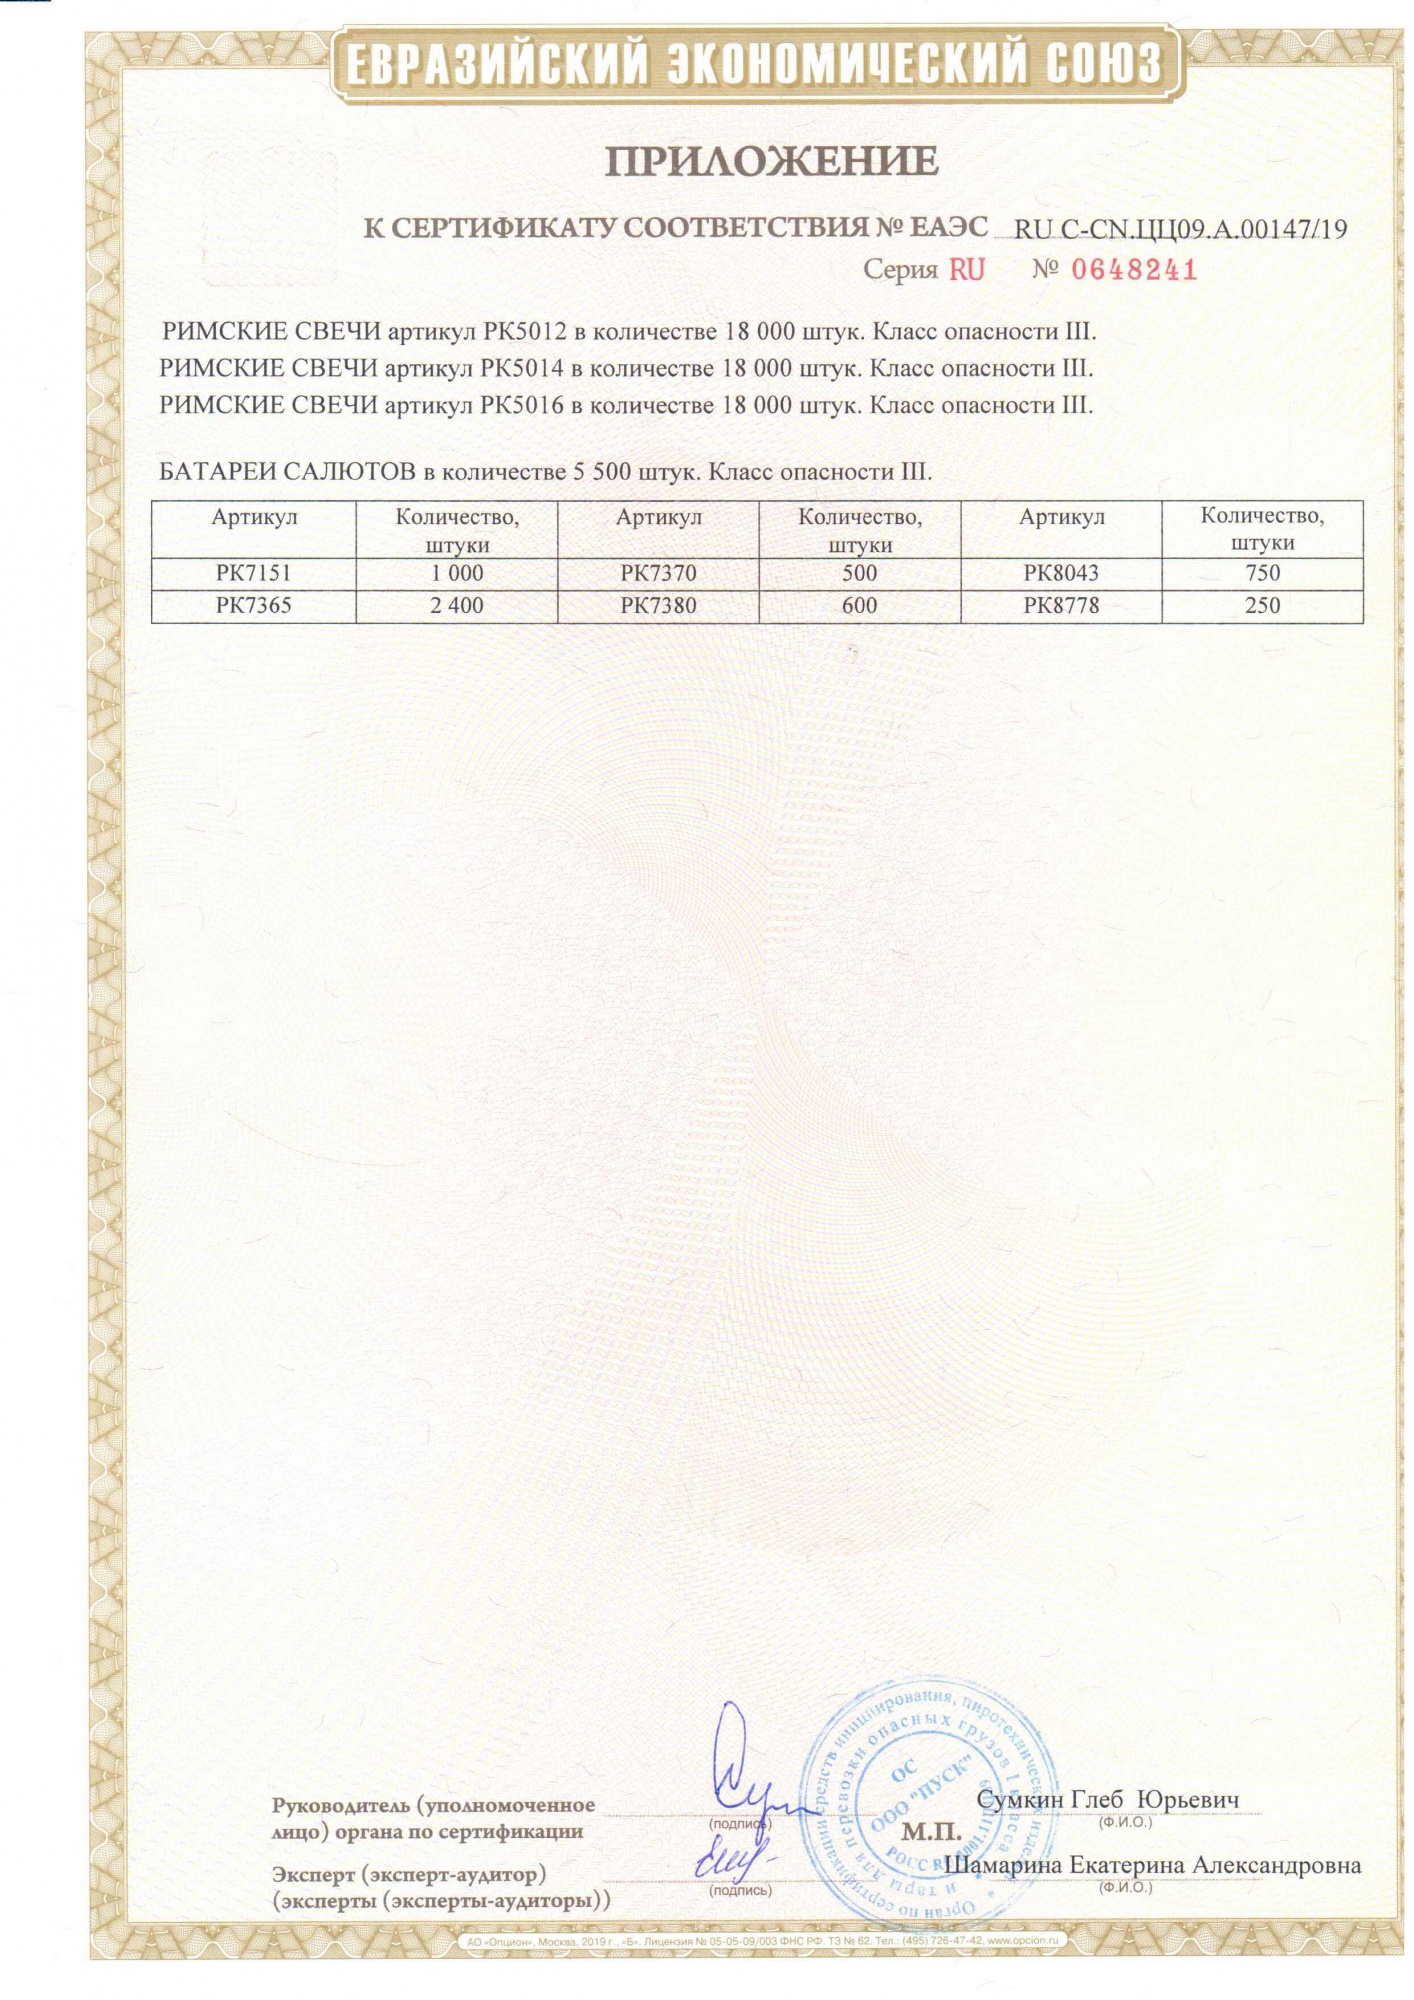 Приложение к сертификату Пируэт 0,8" х 8 (арт. РК5012)